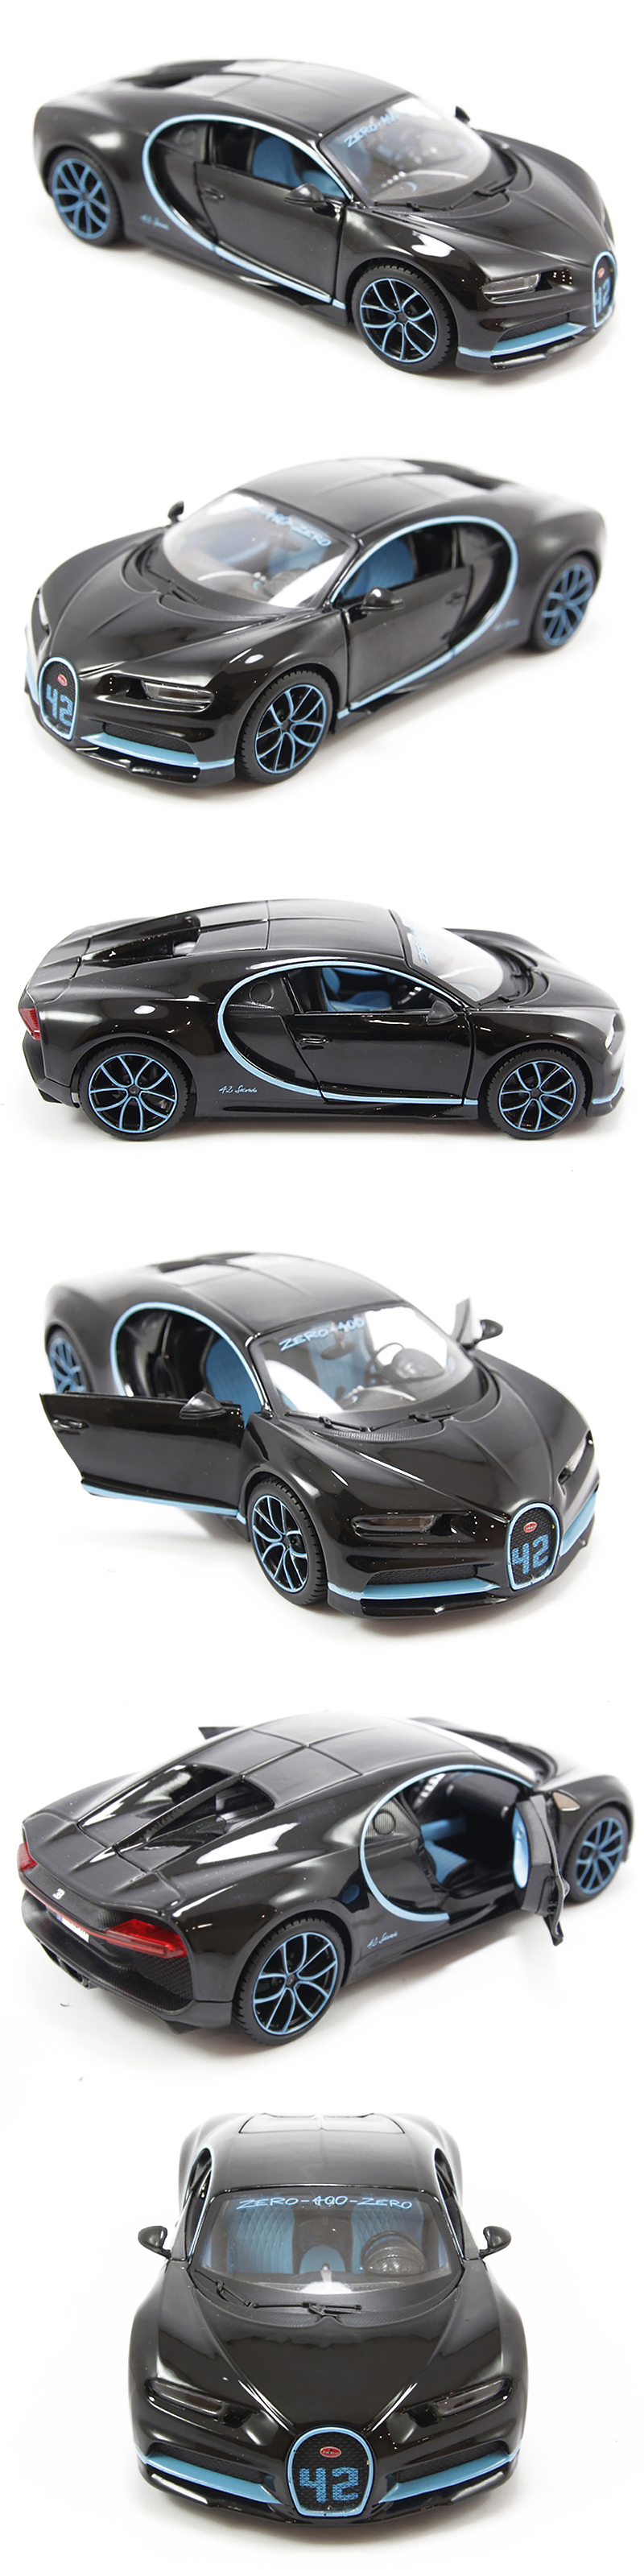 Mô hình Xe Bugatti Chiron 42 Seconds 1:24